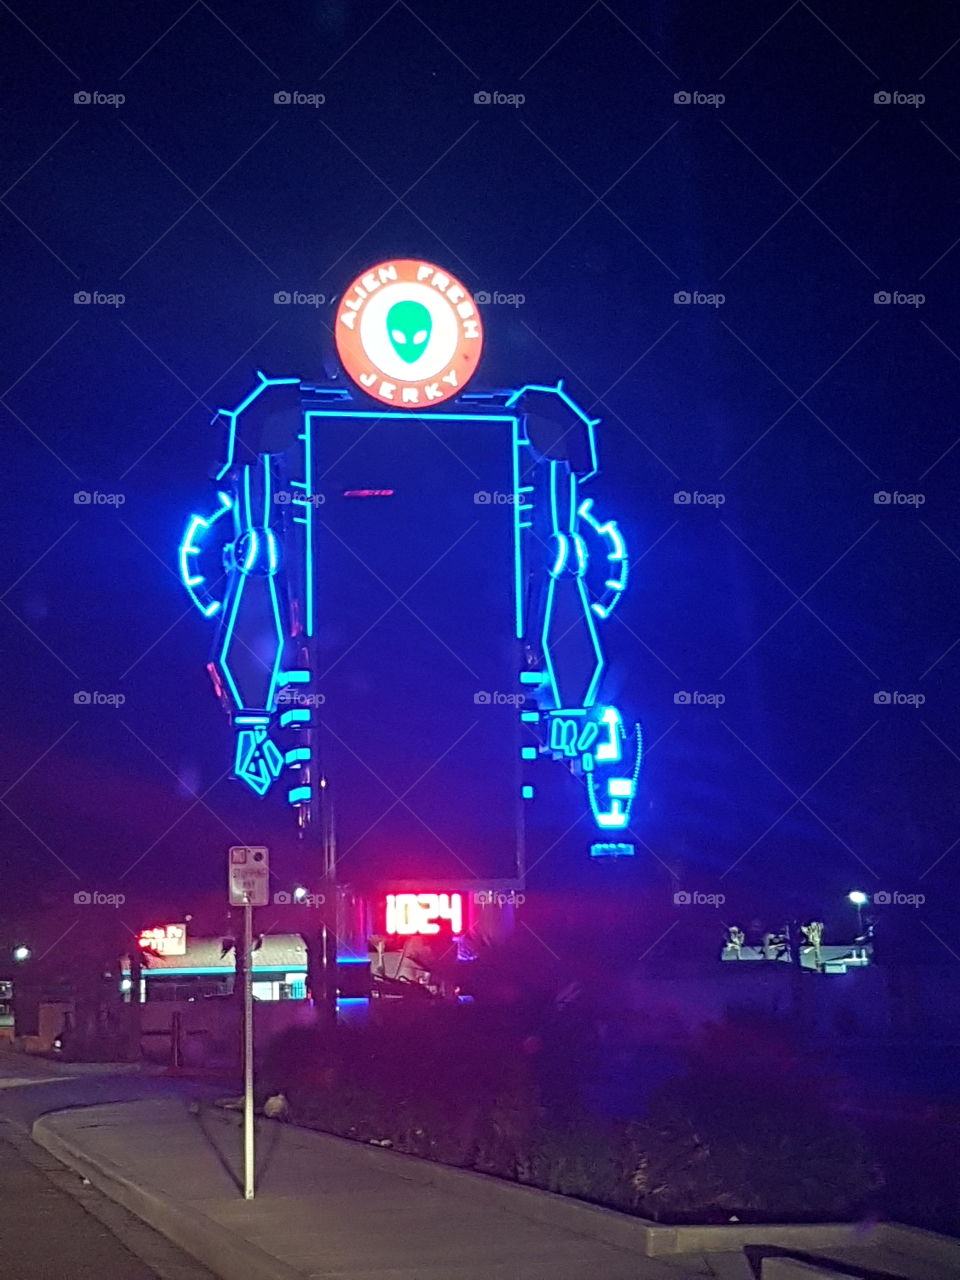 #alien
#las Vegas
#desert
#night
#unique